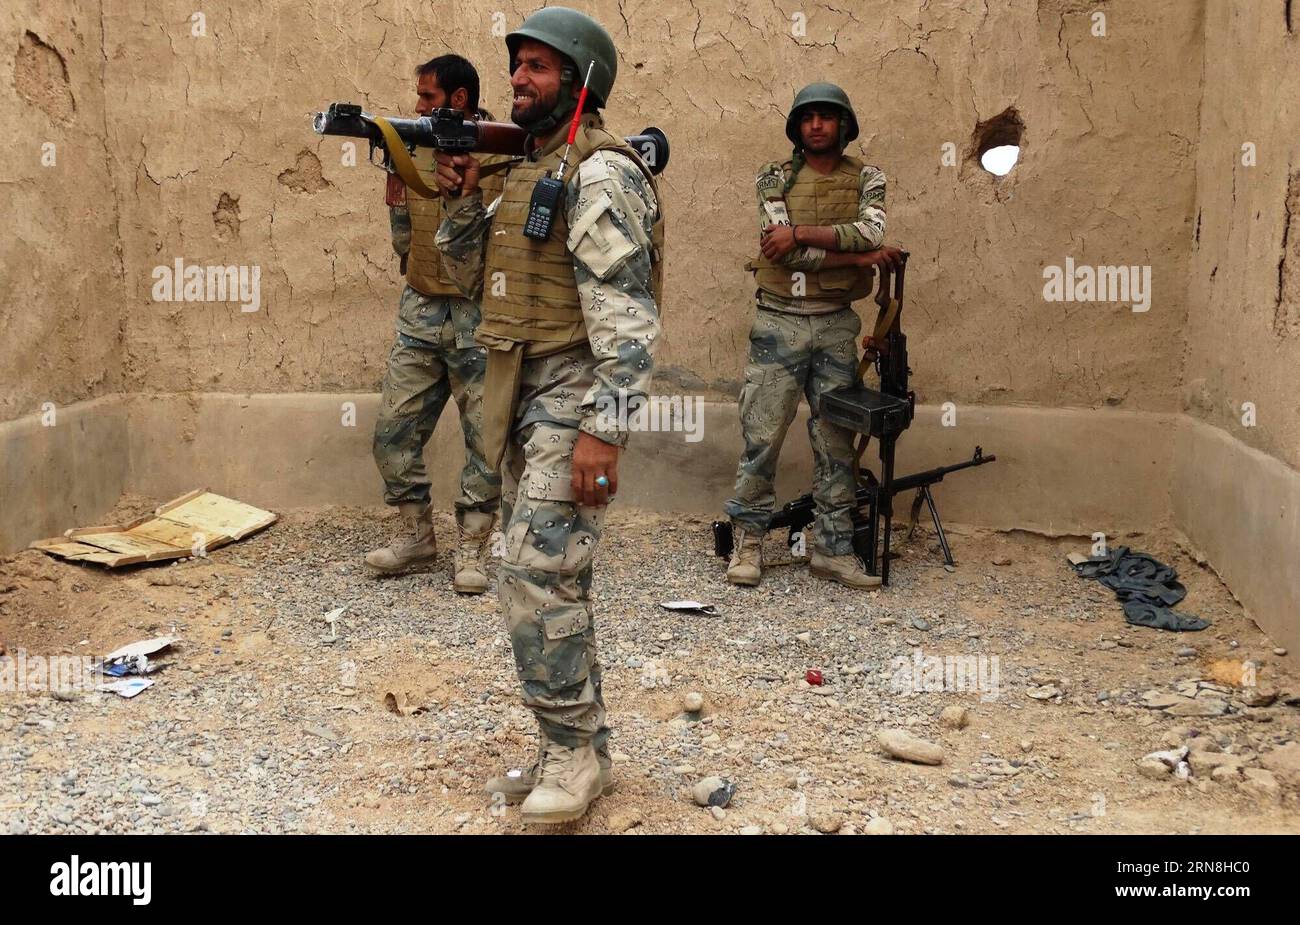 (151025) -- HALMAND, 24. Oktober 2015 -- Polizisten stehen während einer Militäroperation am Stadtrand von Lashkargah in der Provinz Helmand, Afghanistan, 24. Oktober 2015 in ihrem Fort Wache. Afghanische Sicherheitskräfte haben darauf gedrängt, die Militanten in widerspenstigen Provinzen zu beseitigen, da Taliban-Militanten versucht haben, vor dem Winter in Afghanistan mehr Territorium einzunehmen und ihre Positionen zu festigen. ) AFGHANISTAN-HALMAND-MILITÄROPERATION Safdary PUBLICATIONxNOTxINxCHN OKT 24 2015 Polizisten stehen bei ihren Fortschritten während einer Militäroperation AM Rande der AFG in der Provinz Helmand in Wache Stockfoto